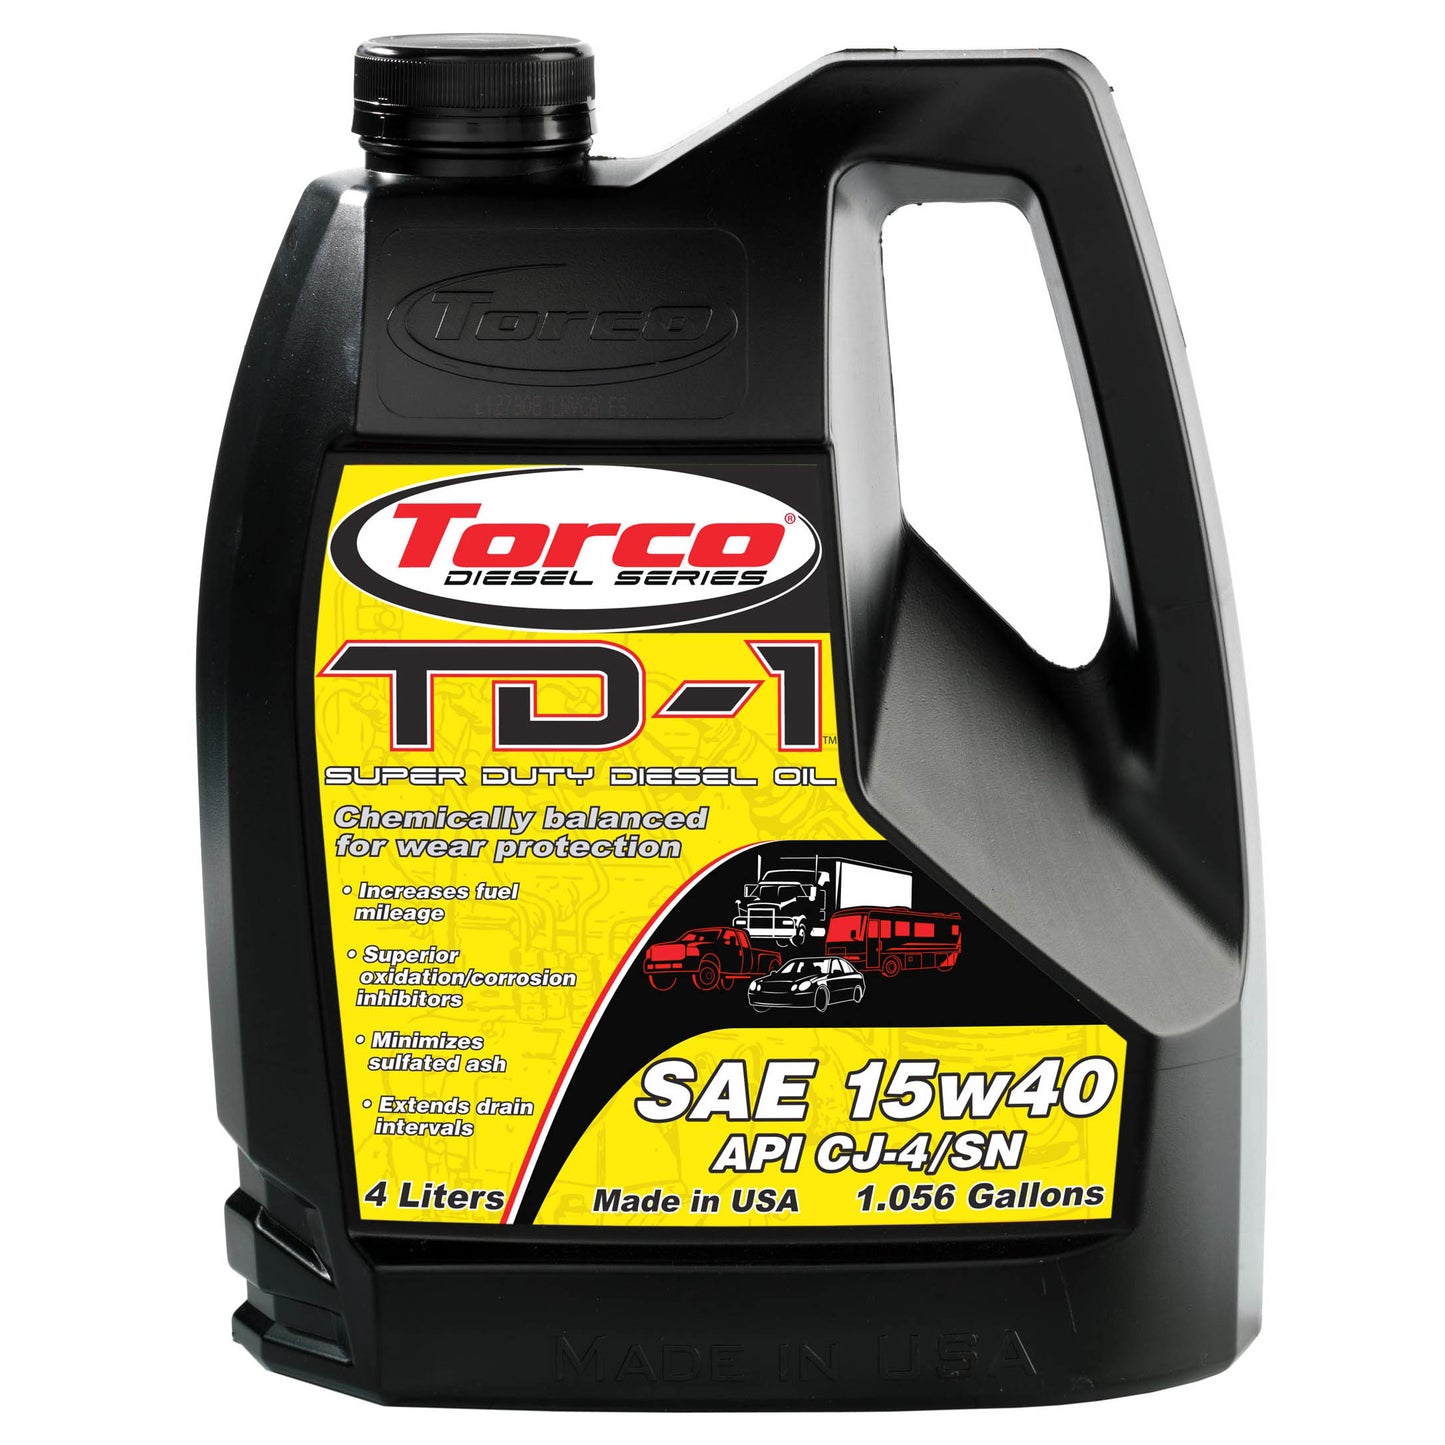 Torco TD-1 Heavy Duty Diesel Oil 15w40